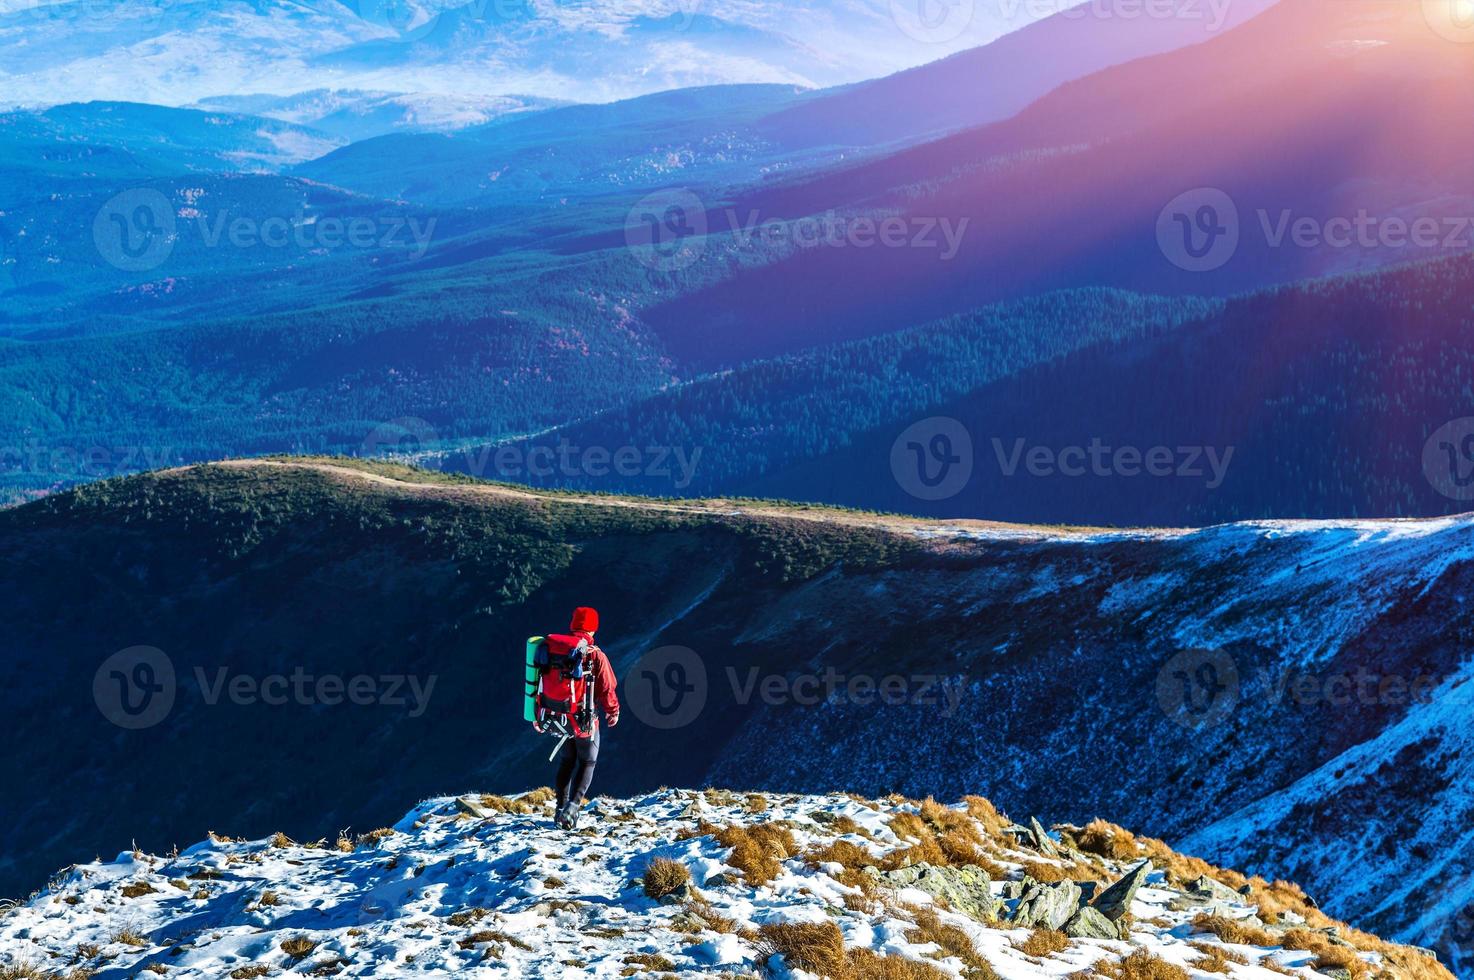 alpinista andando nas montanhas de inclinação de neve e sol brilhando foto